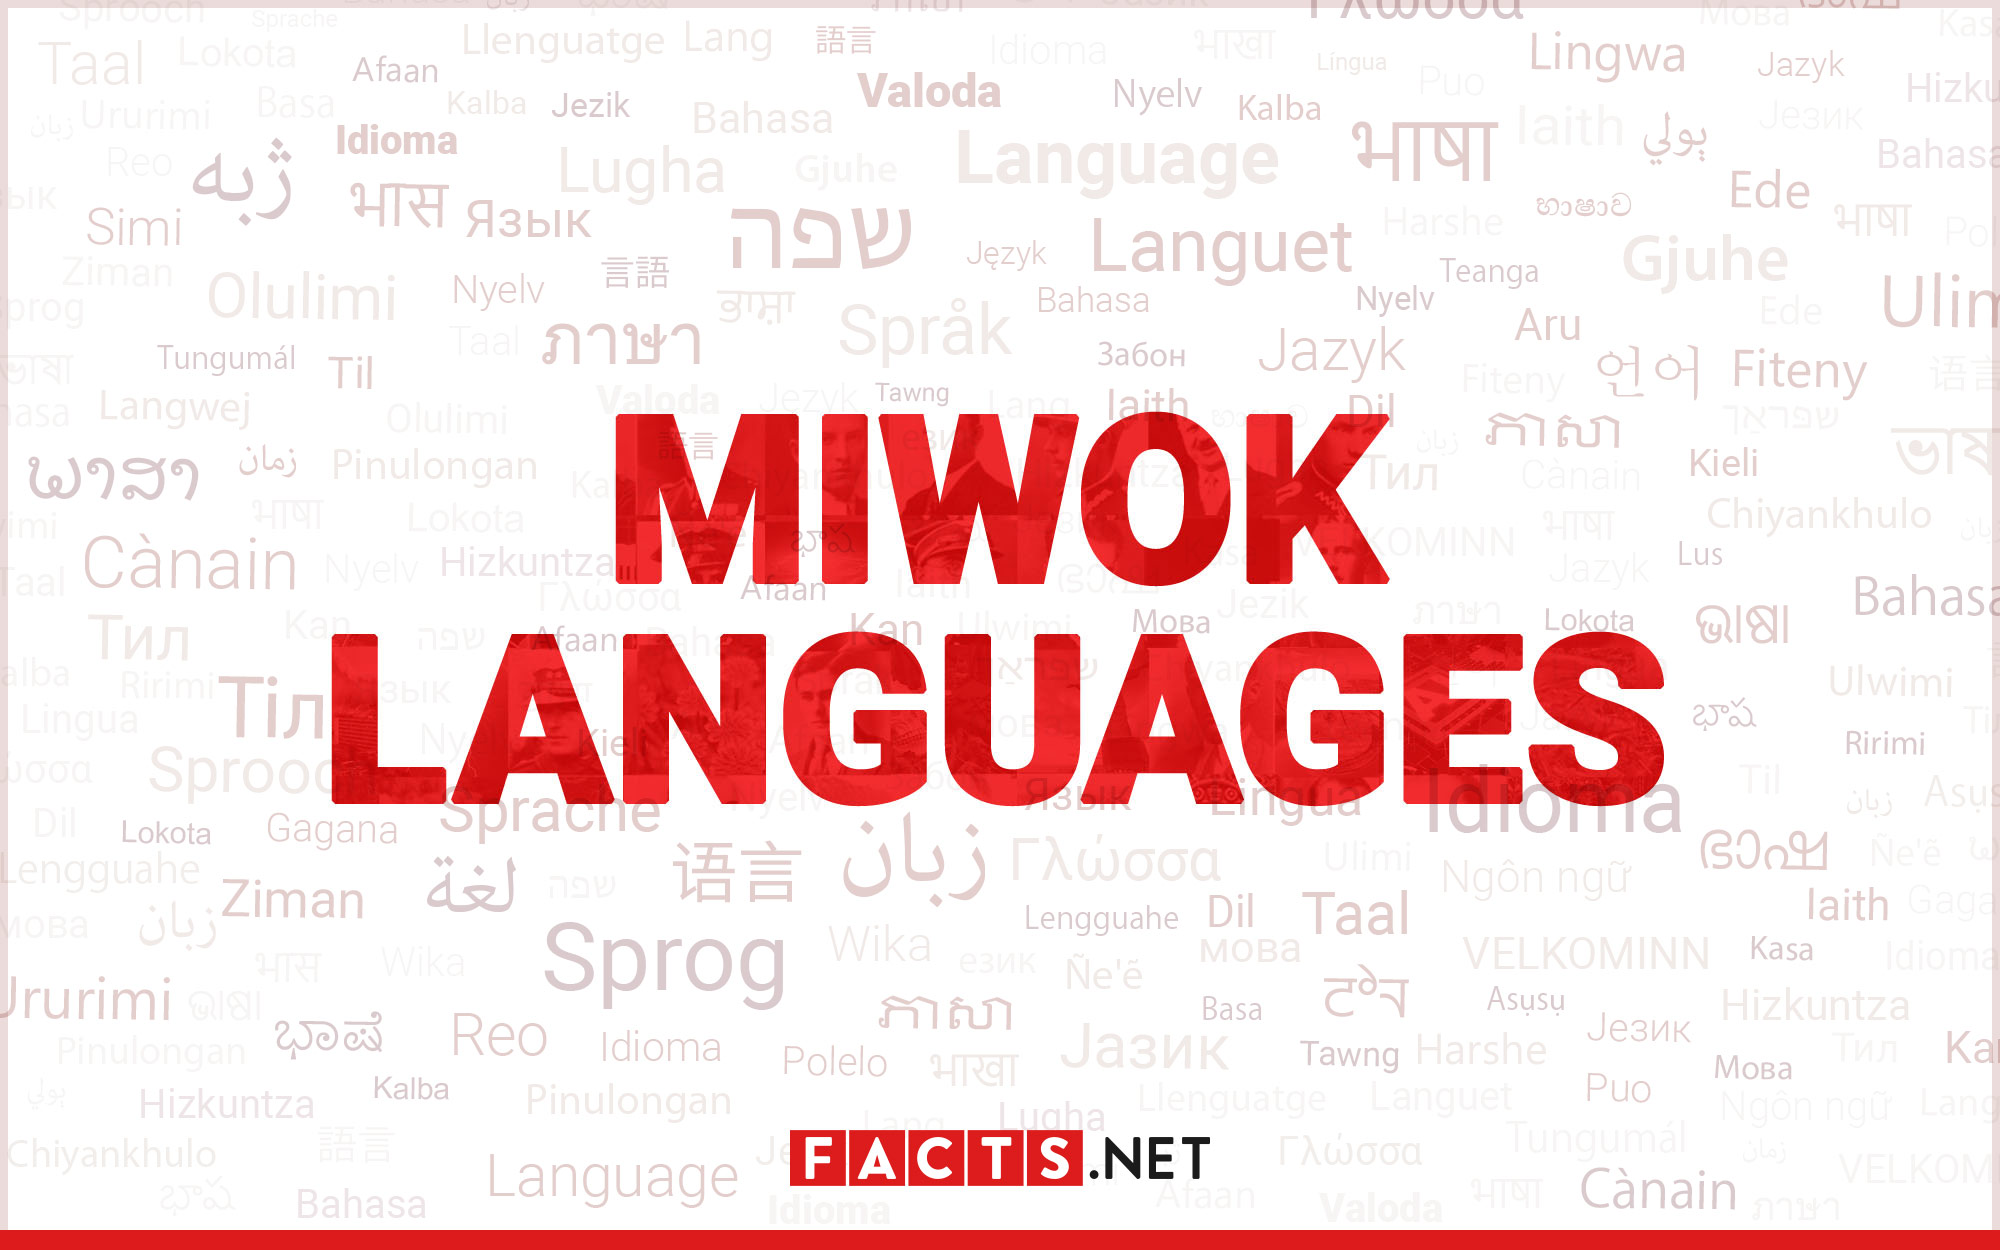 19-captivating-facts-about-miwok-languages